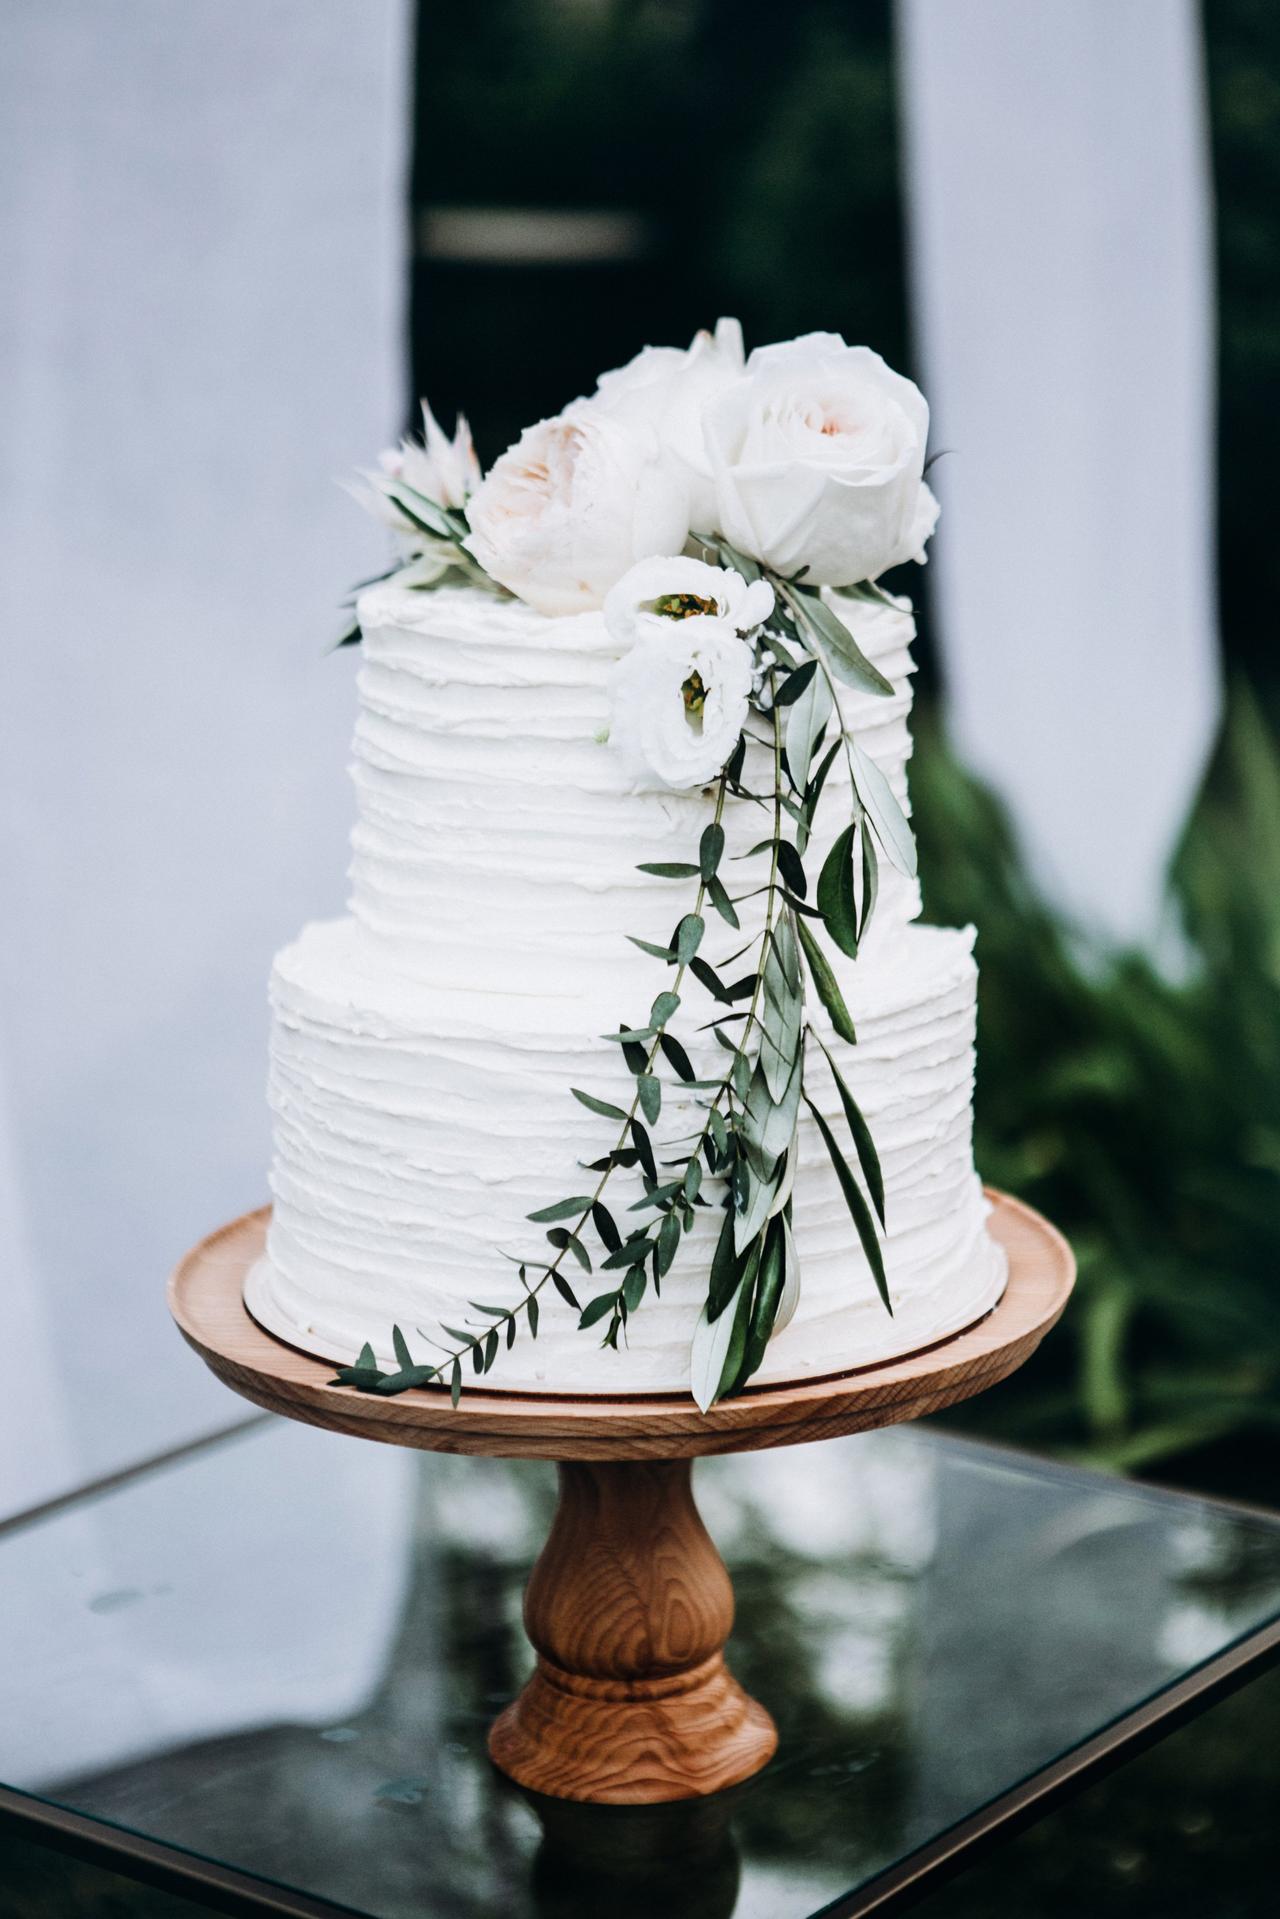 https://cdn0.weddingwire.com/article/1193/original/1280/jpg/3911-16-shutterstock-1140867812-2-tier-wedding-cakes.jpeg